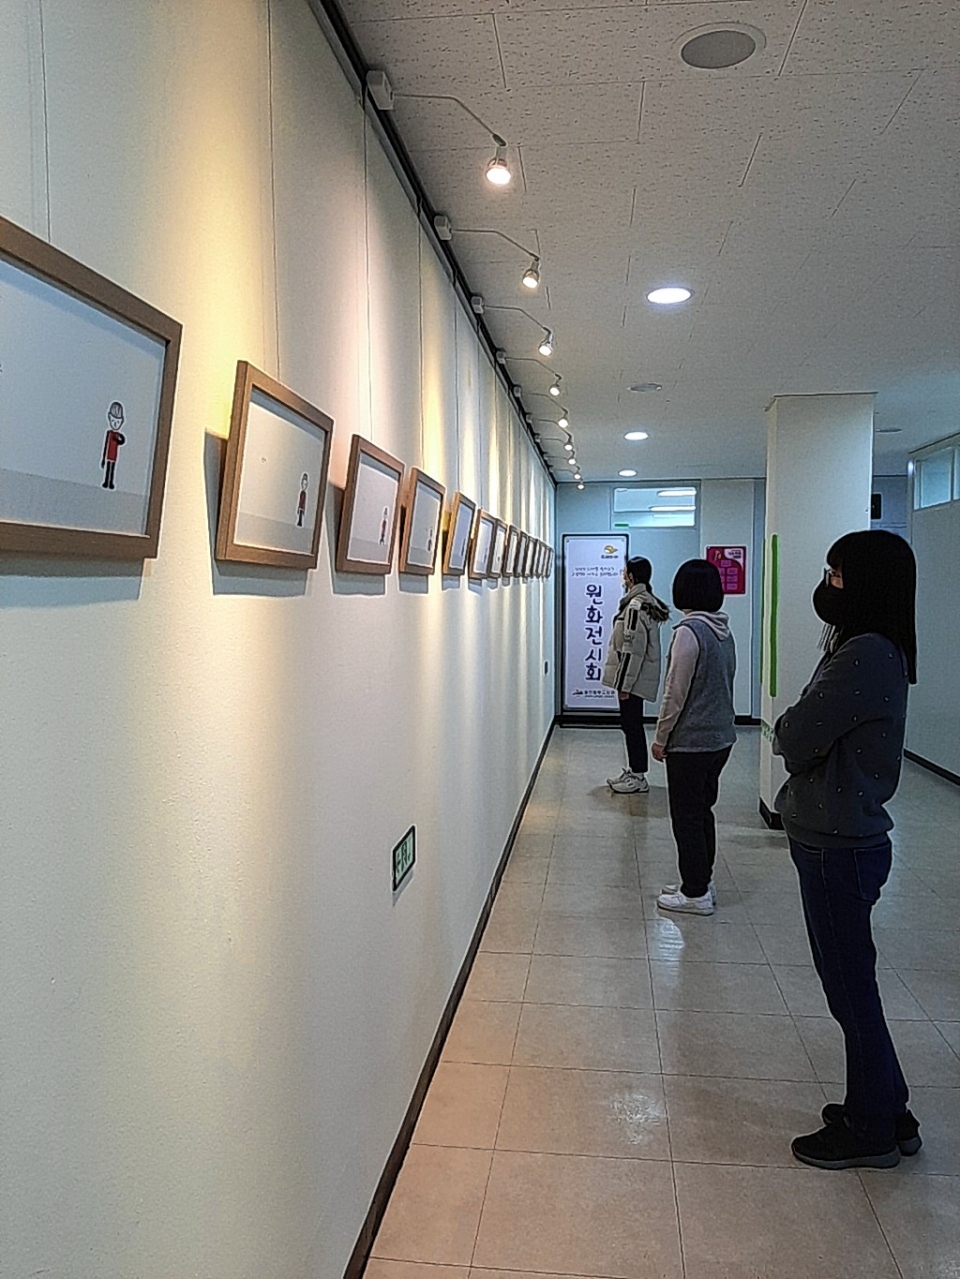 울산 중부도서관은 지역주민에게 다양한독서문화체험의 기회를 제공하고자 오는 3월 24일까지 2층 갤러리에서 그림책 '쓰담쓰담' 원화를 전시한다.